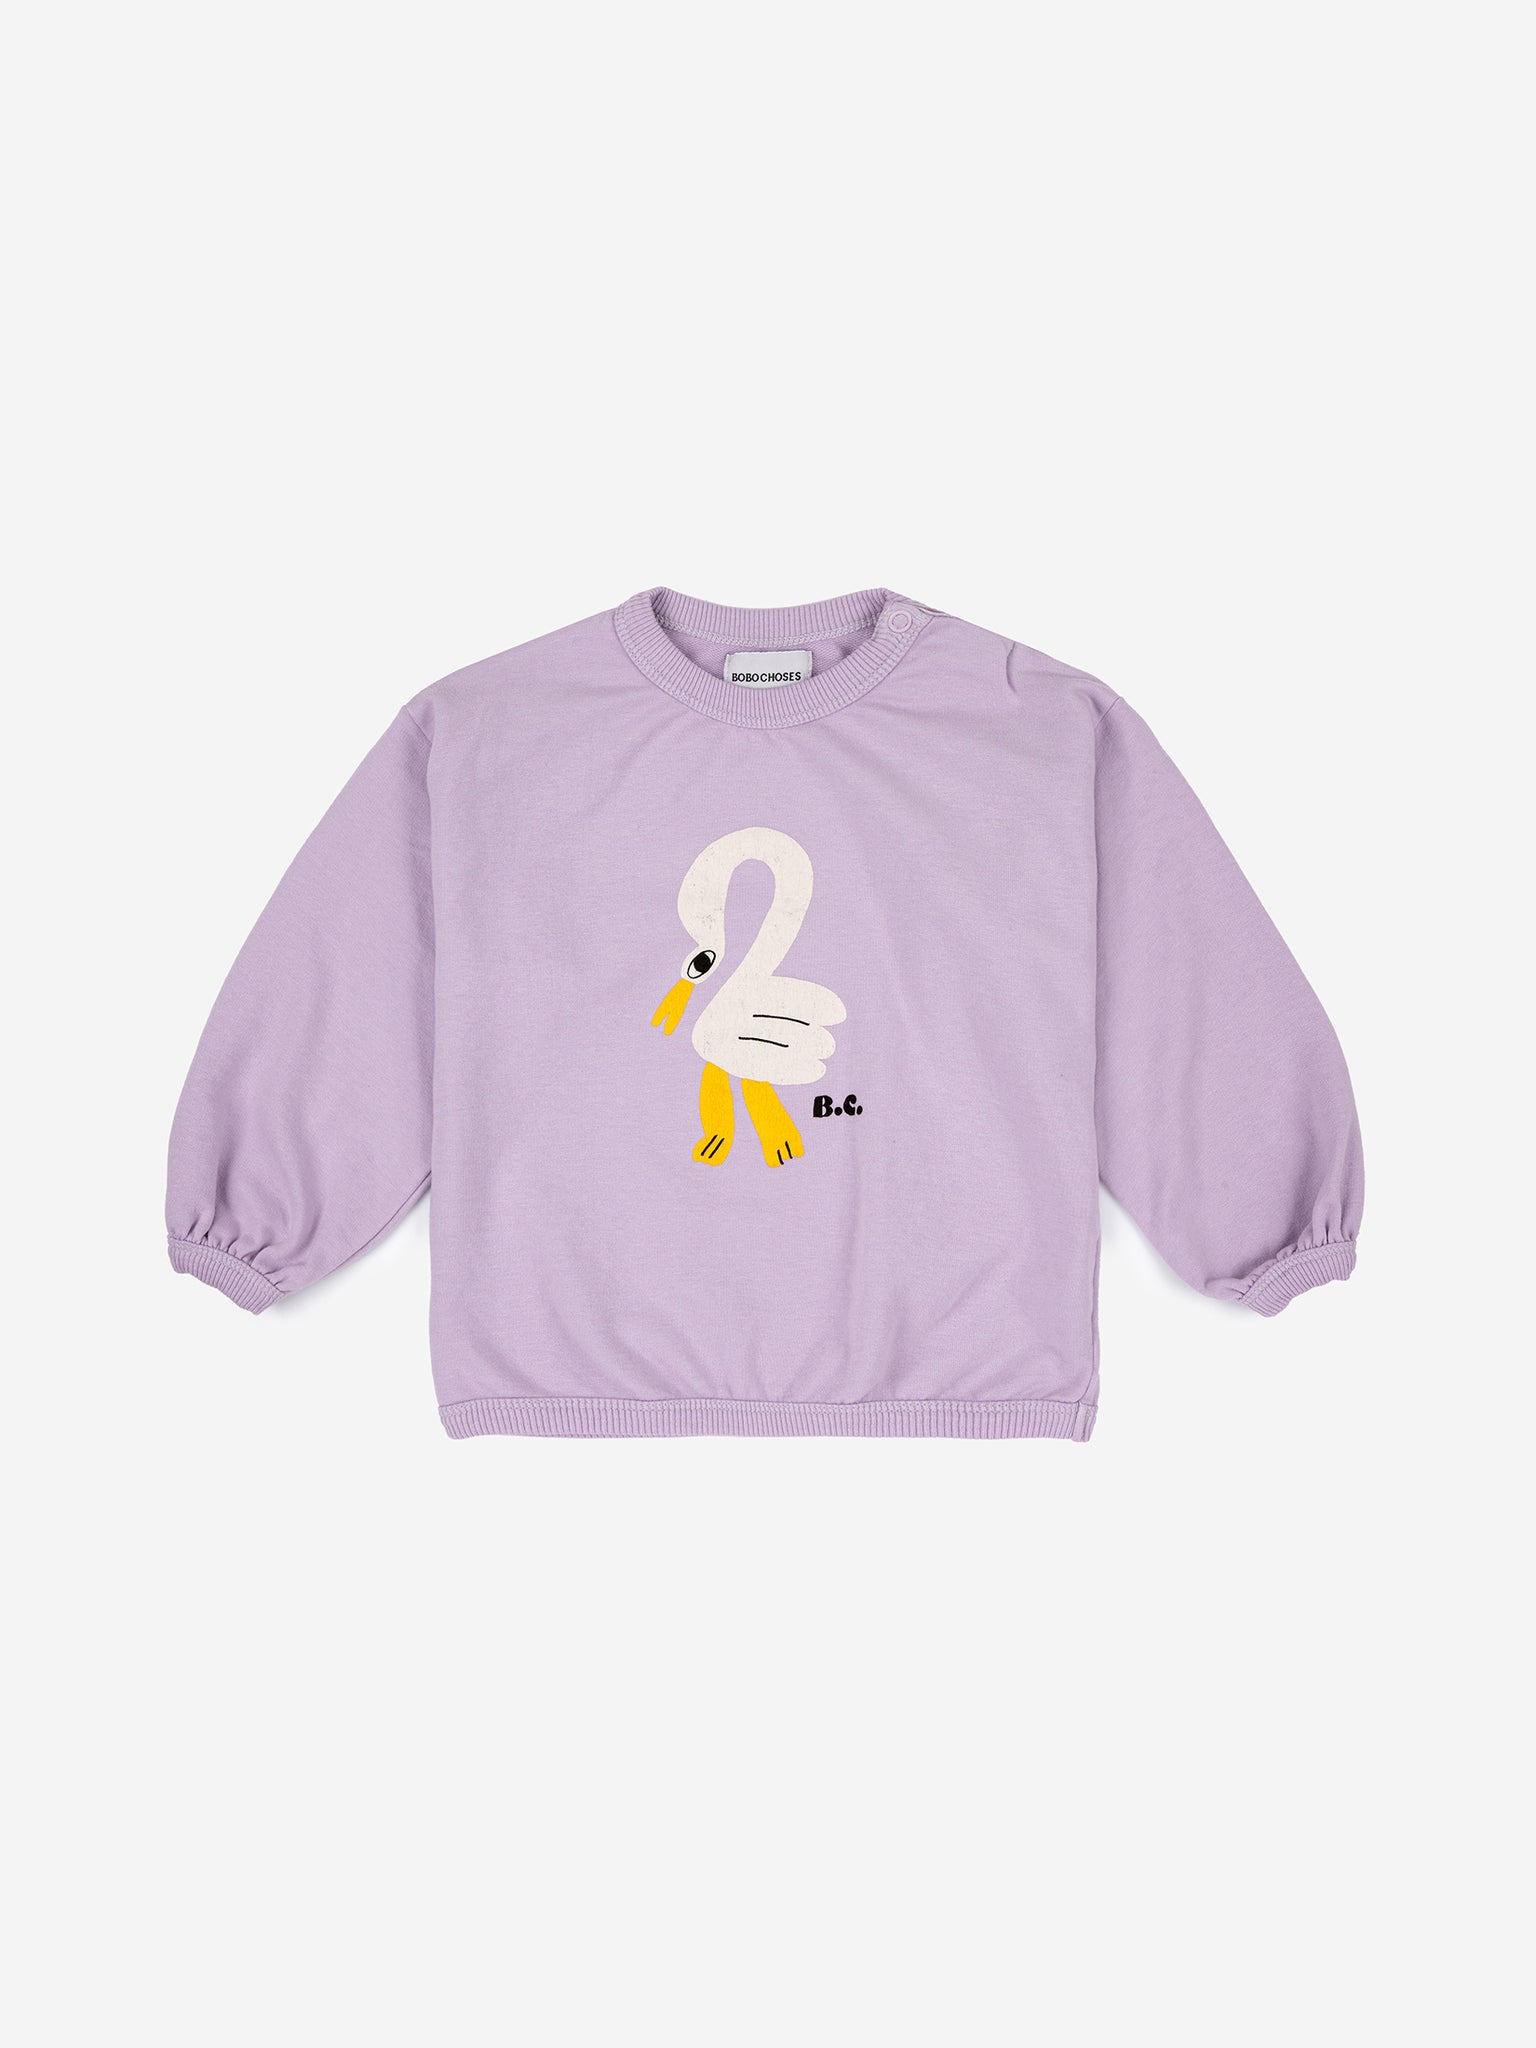 Pelican sweatshirt